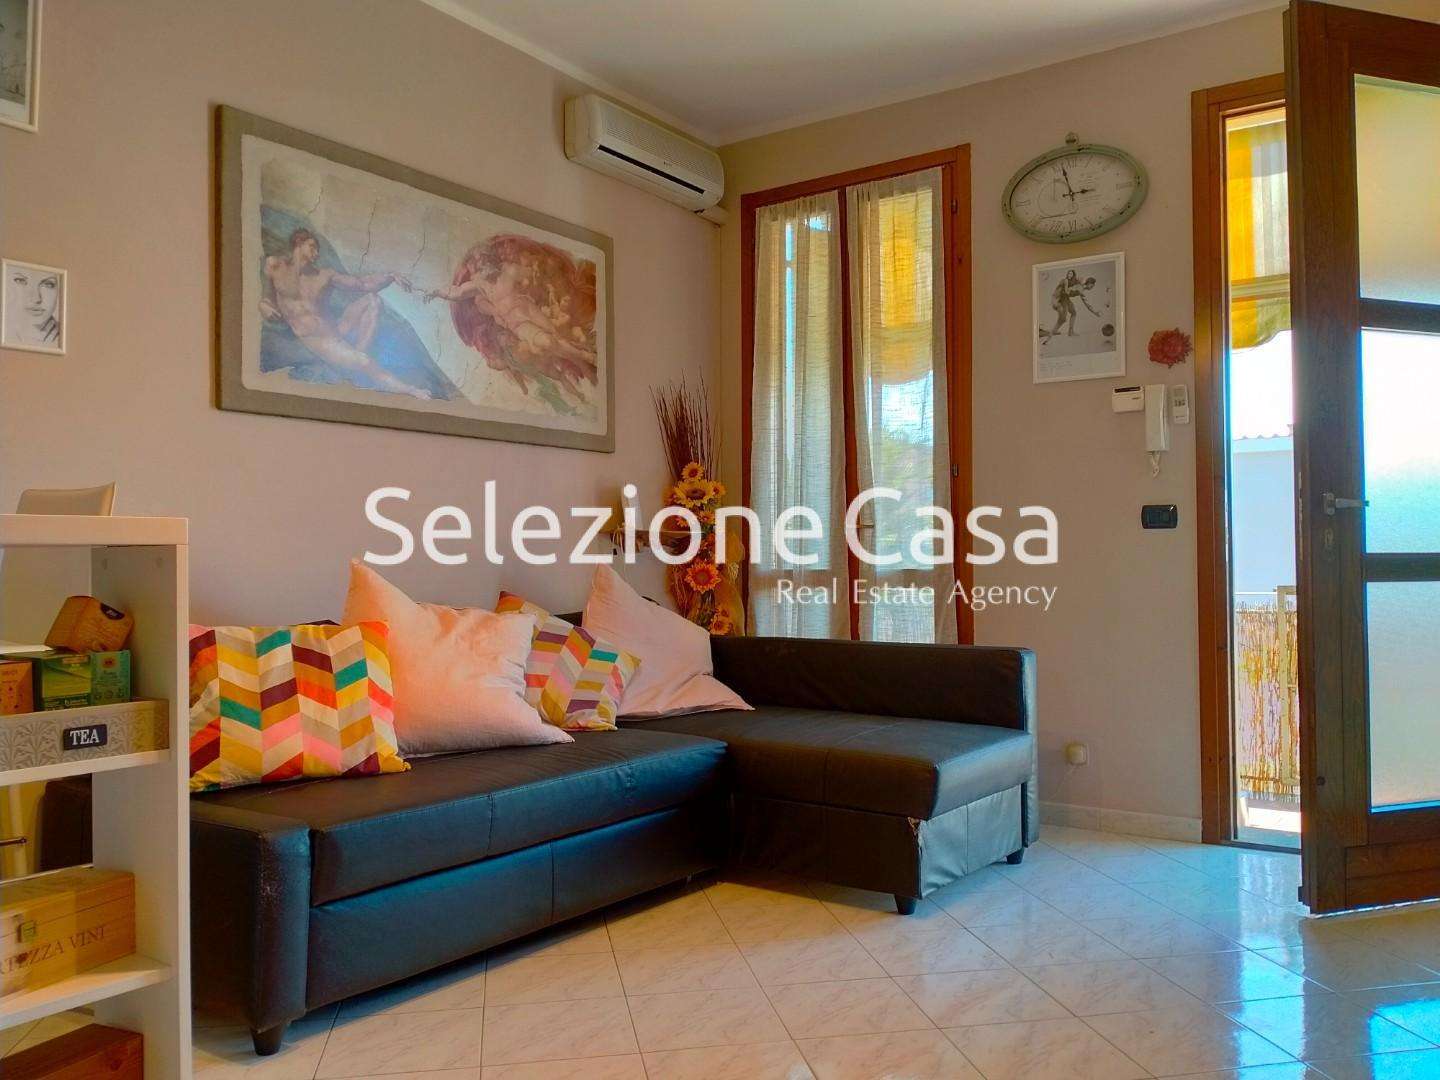 Appartamento in Vendita a Santa Maria a Monte Via Pregiuntino, 56020